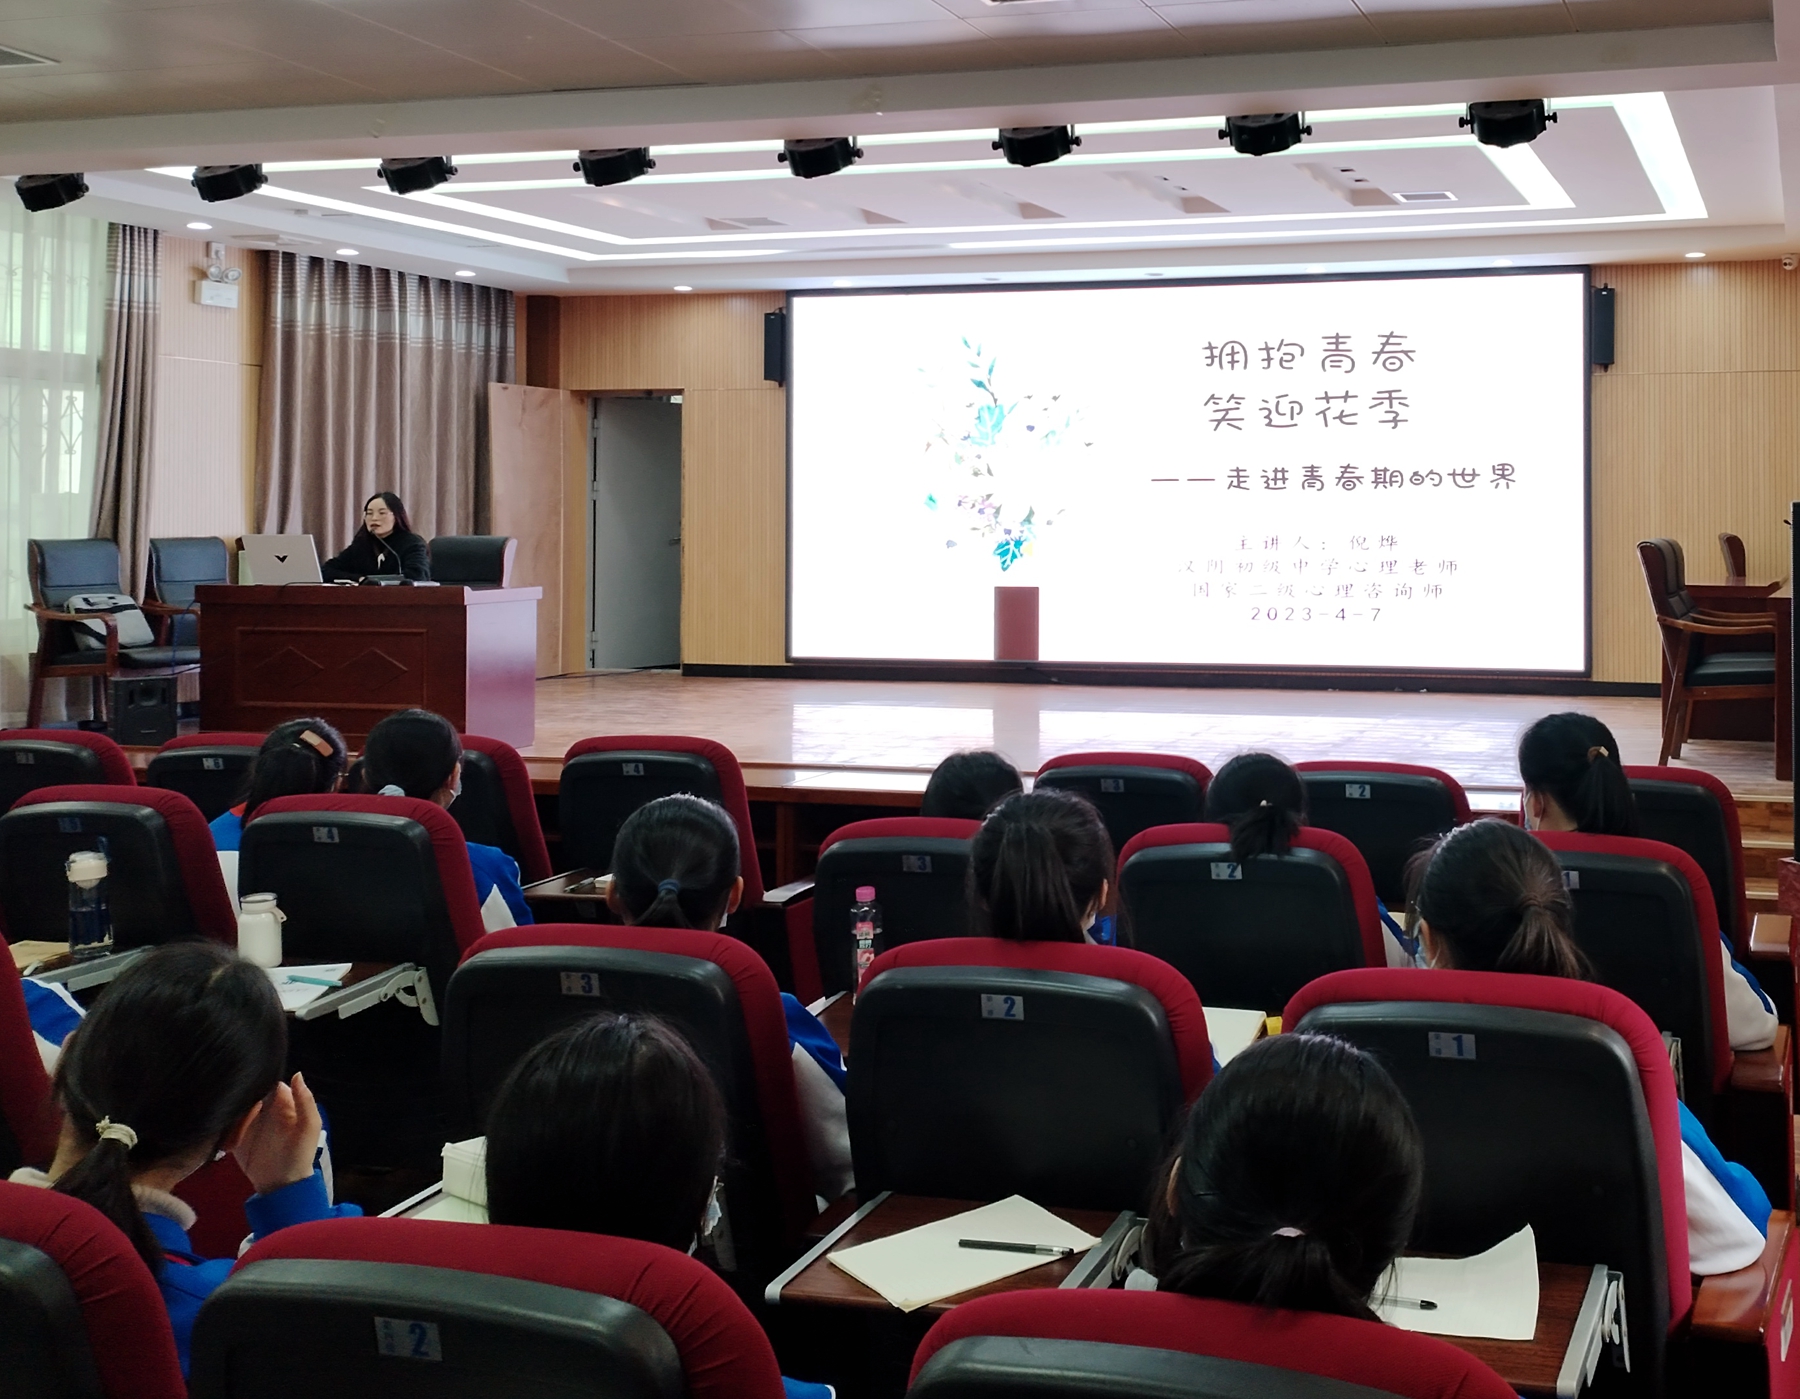 拥抱青春 笑迎花季 ——汉阴县初级中学举办女生青春期心理健康知识讲座